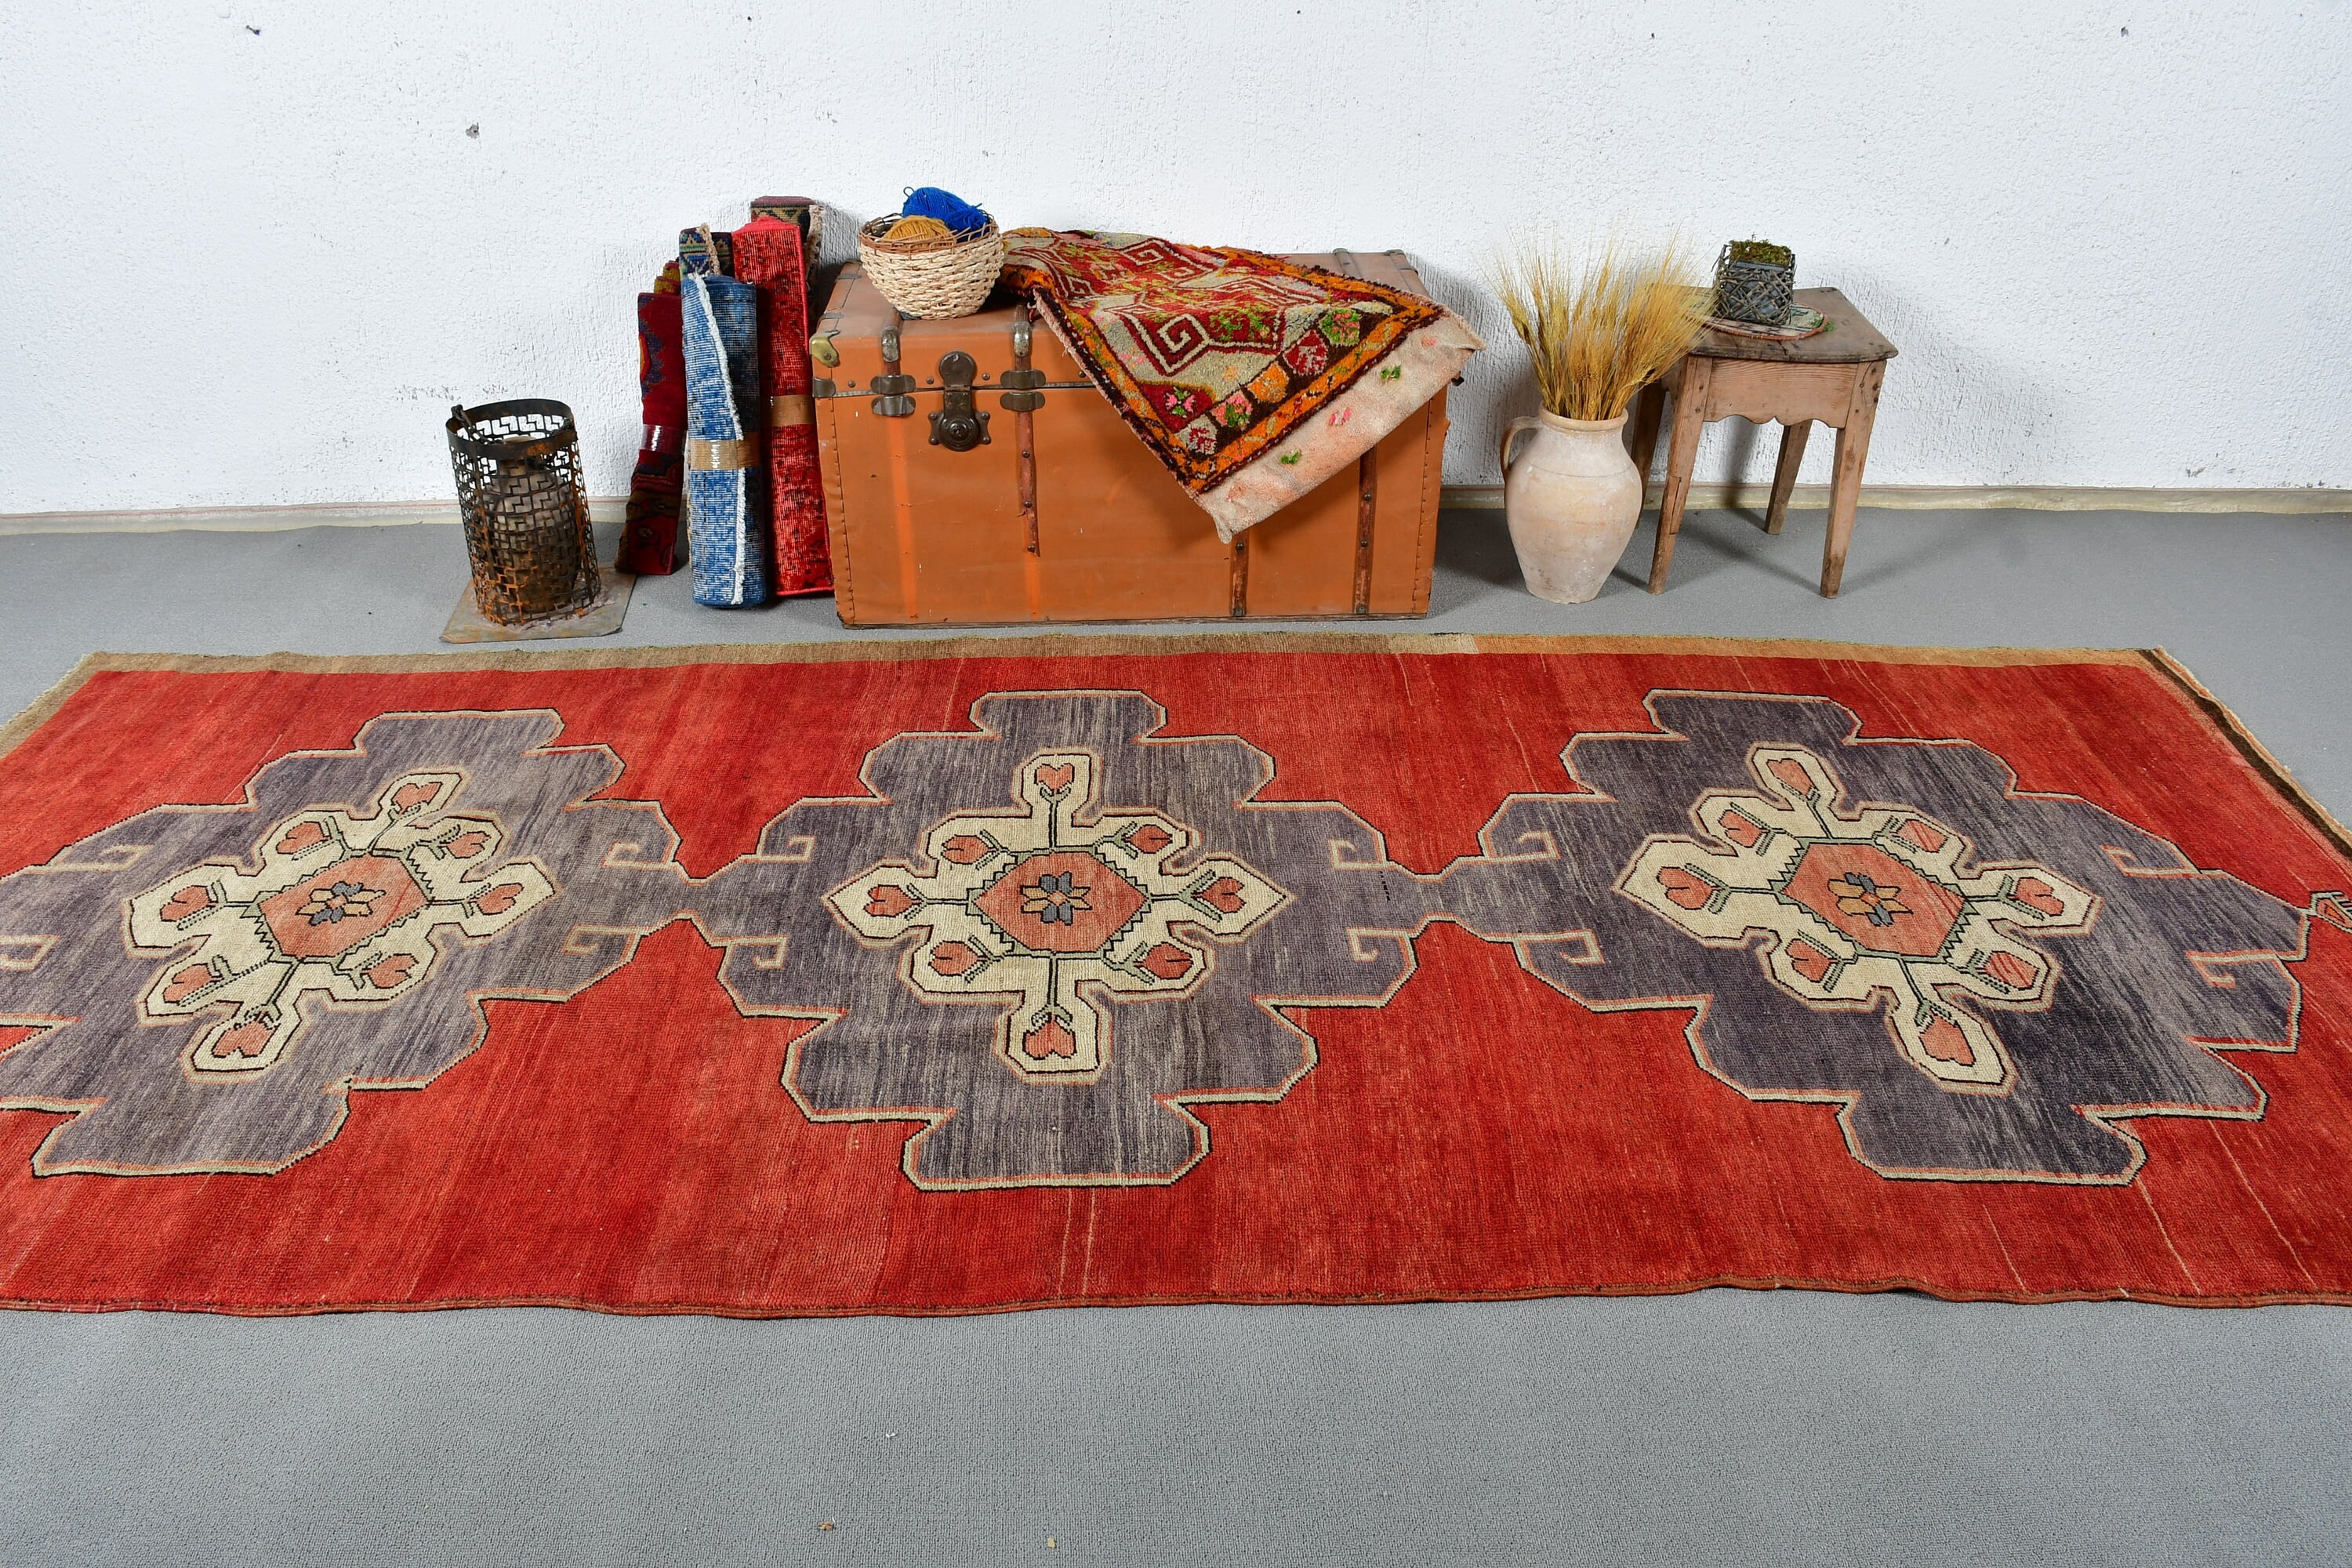 Vintage Rugs, Moroccan Rugs, Turkish Rug, Outdoor Rug, Floor Rugs, Dining Room Rugs, 4.7x11.5 ft Large Rug, Bedroom Rugs, Red Oushak Rug